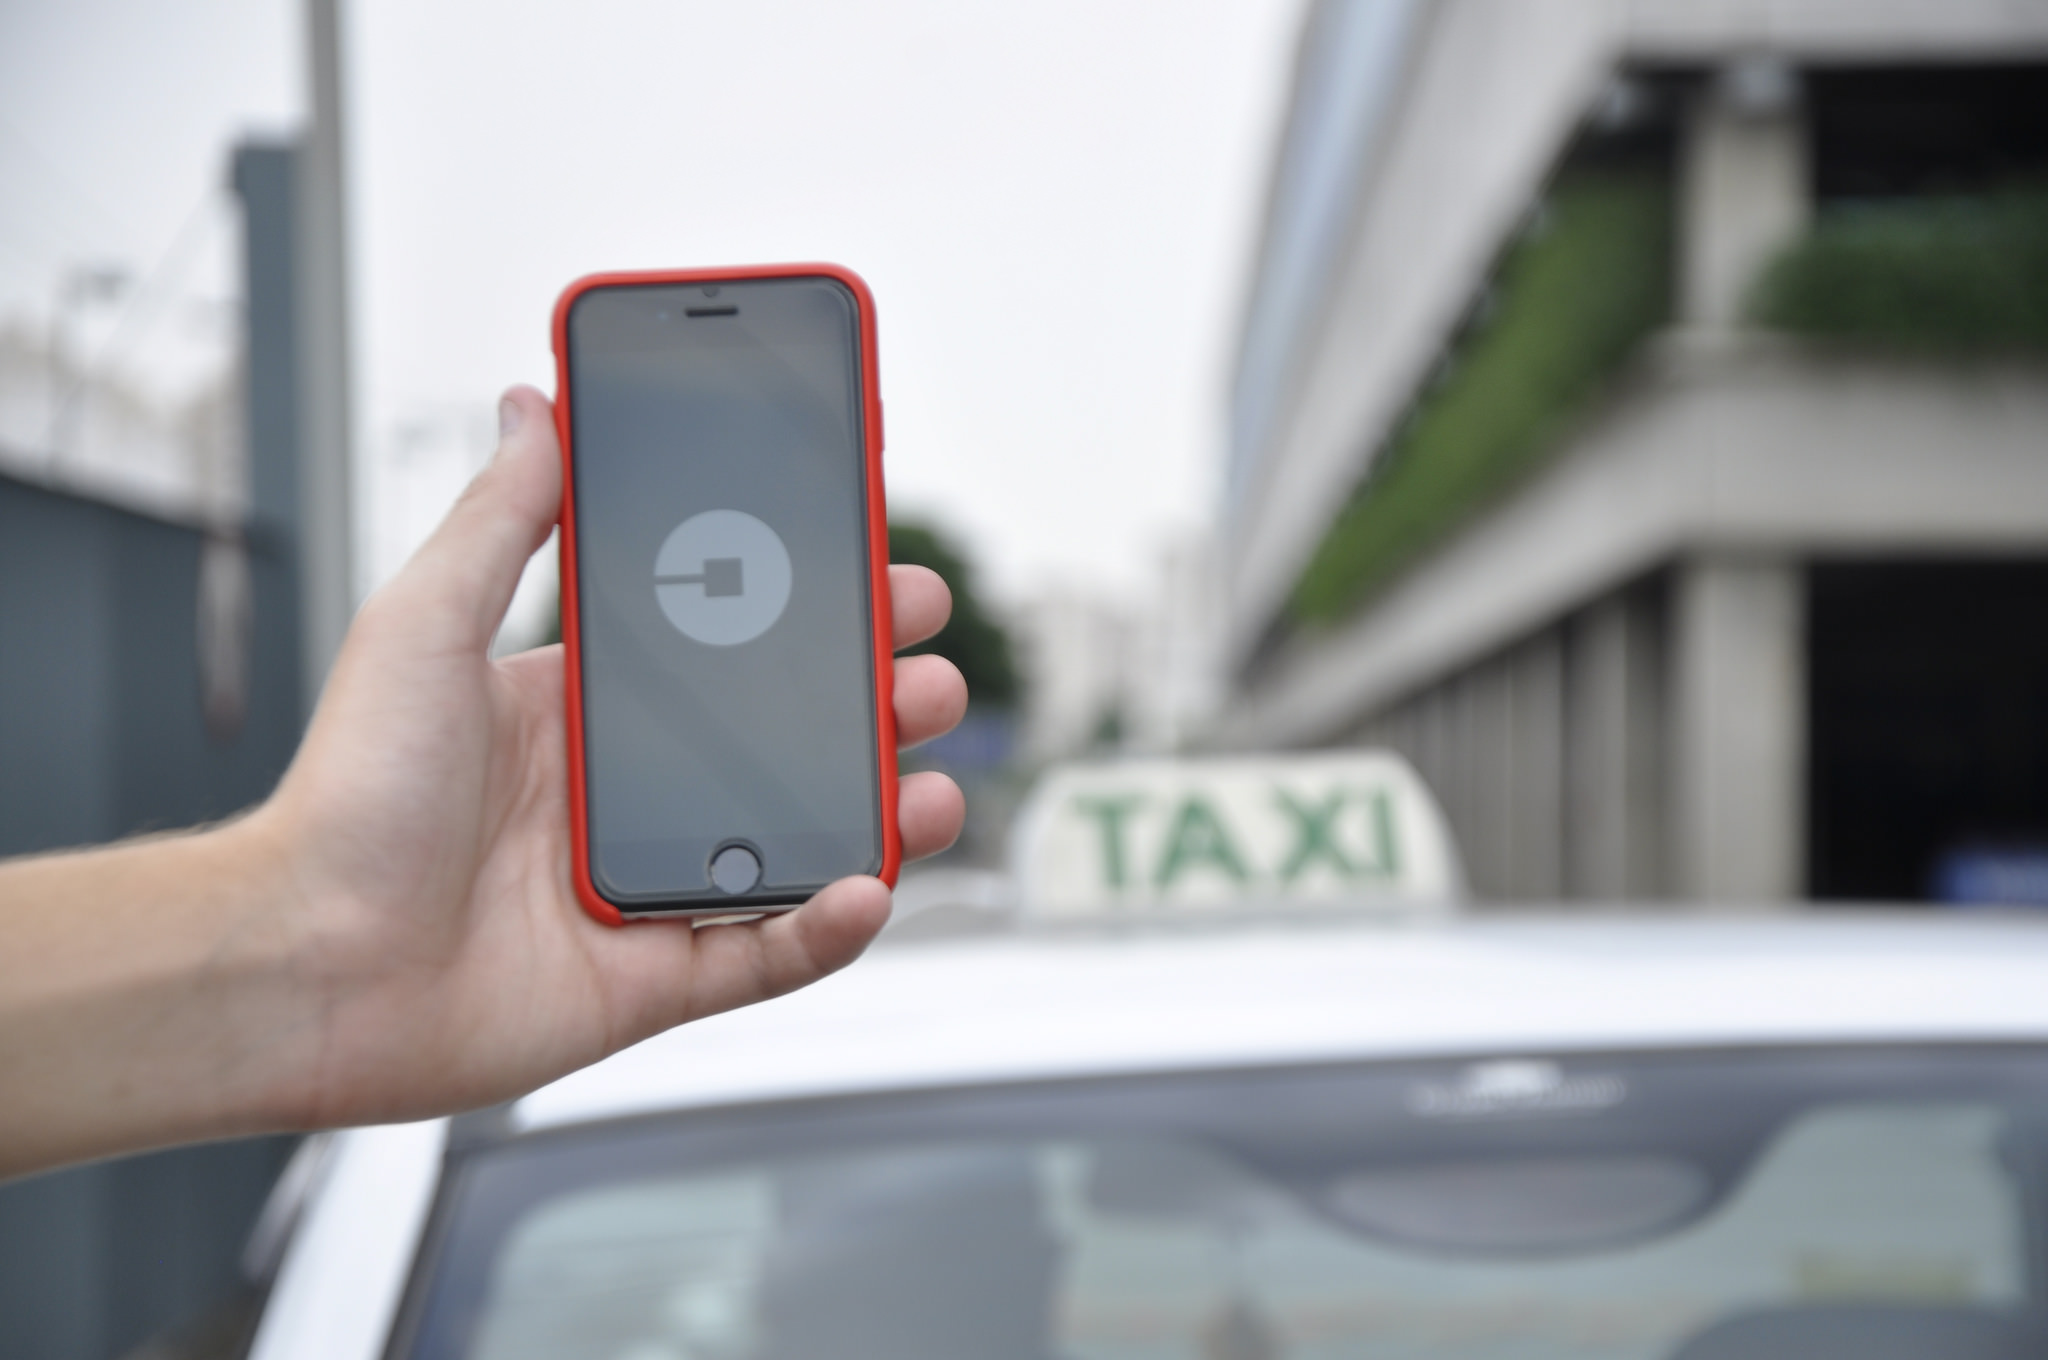 Prefeitura de São Paulo inicia fiscalização de carros de Uber, 99 e Cabify